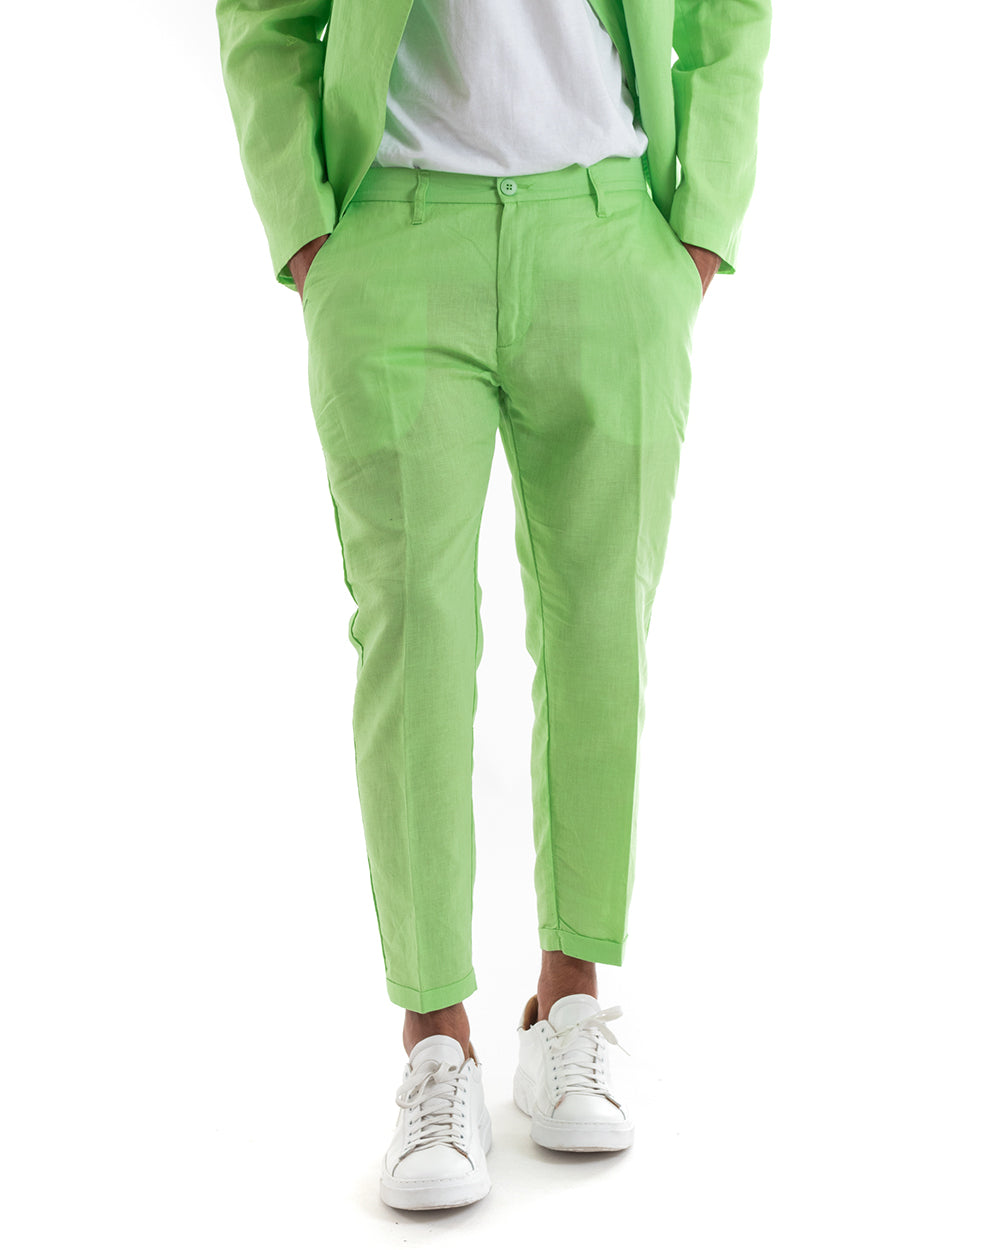 Abito Uomo Doppiopetto Vestito Lino Completo Giacca Pantaloni Verde Pisello Elegante Cerimonia GIOSAL-OU2133A